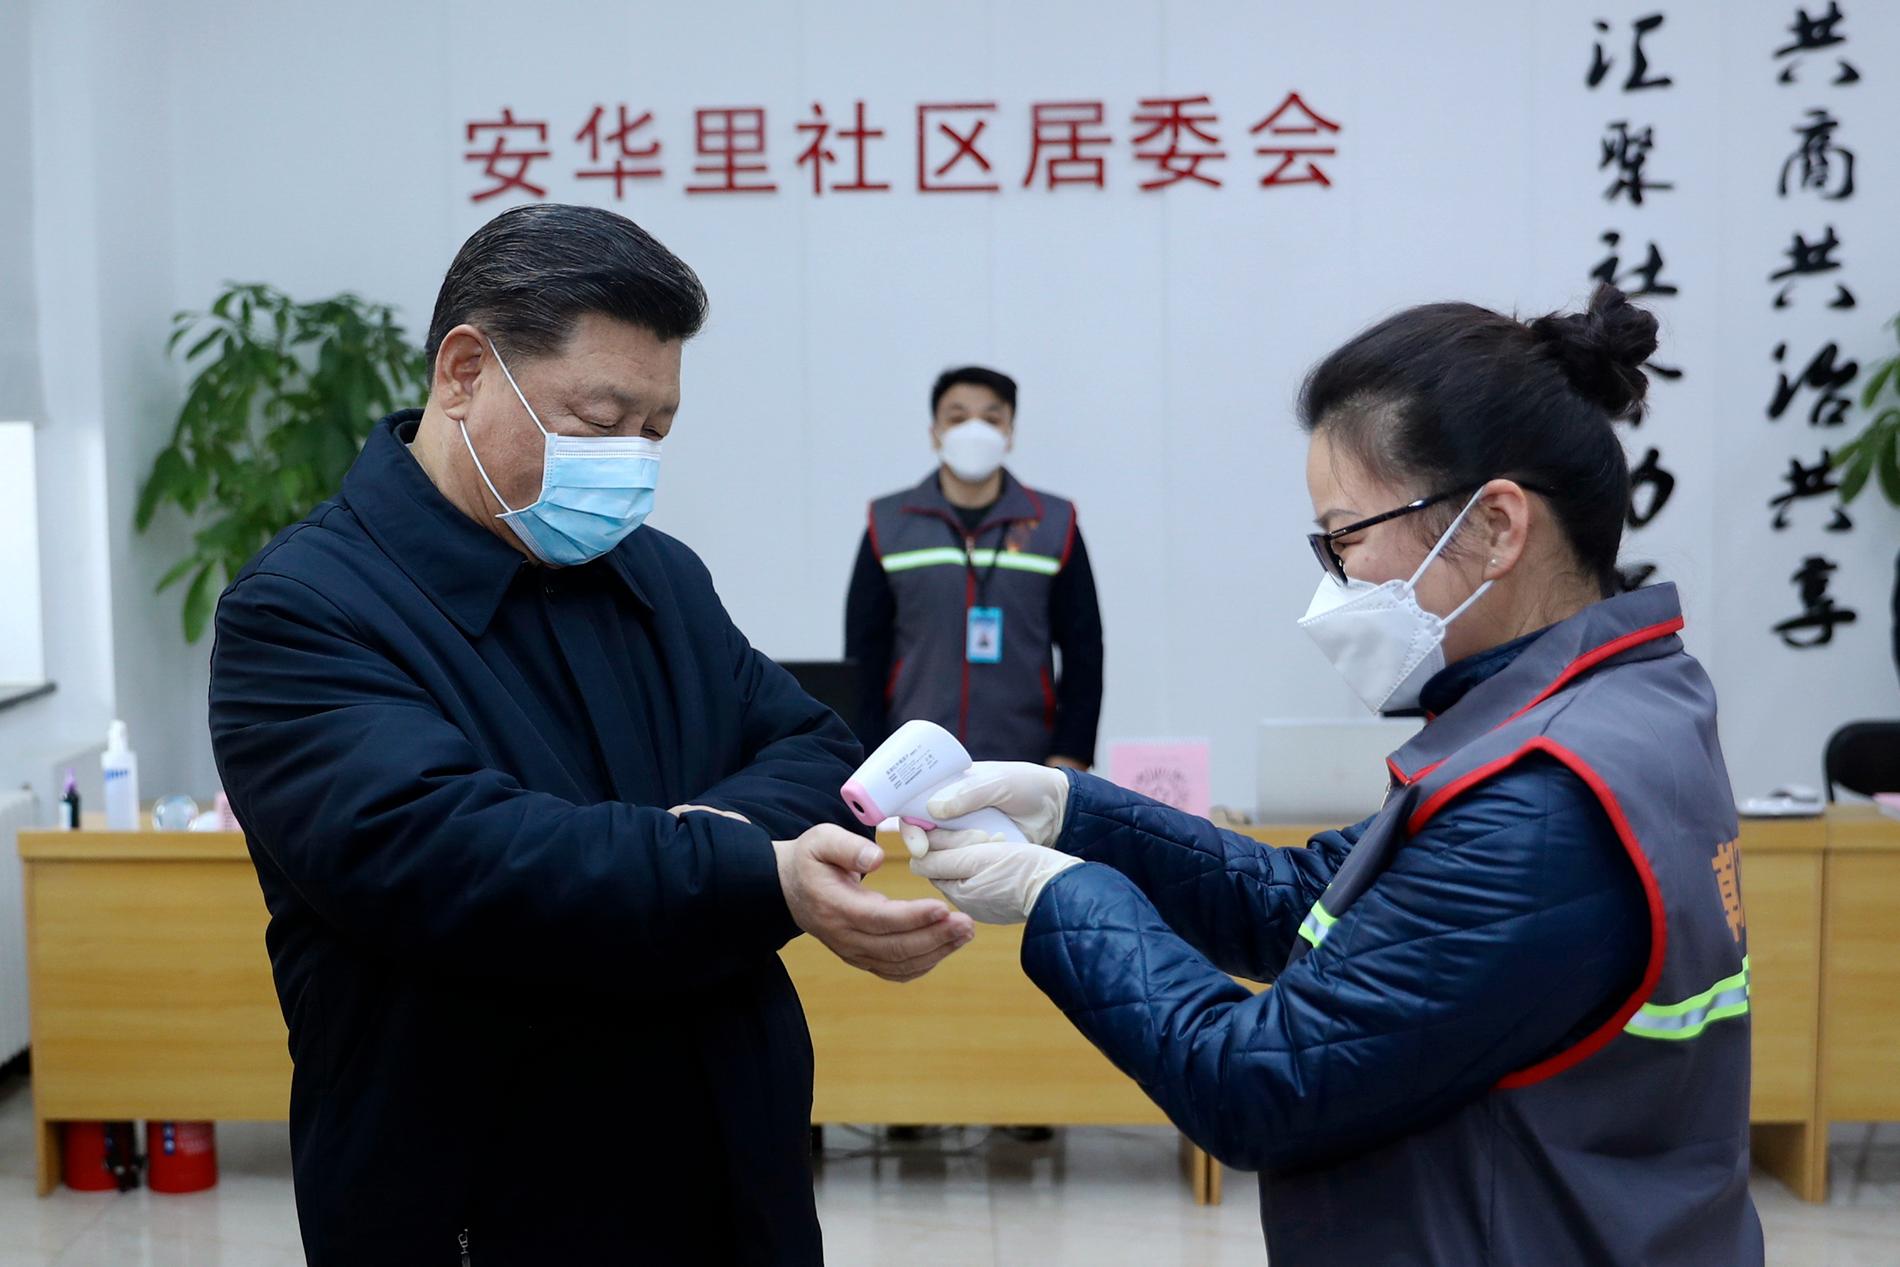 Kinas president Xi Jinping får temperaturen kontrollerad under ett besök på en vårdinrättning i Peking. Bild distribuerad av Kinas statliga nyhetsbyrå Nya Kina.